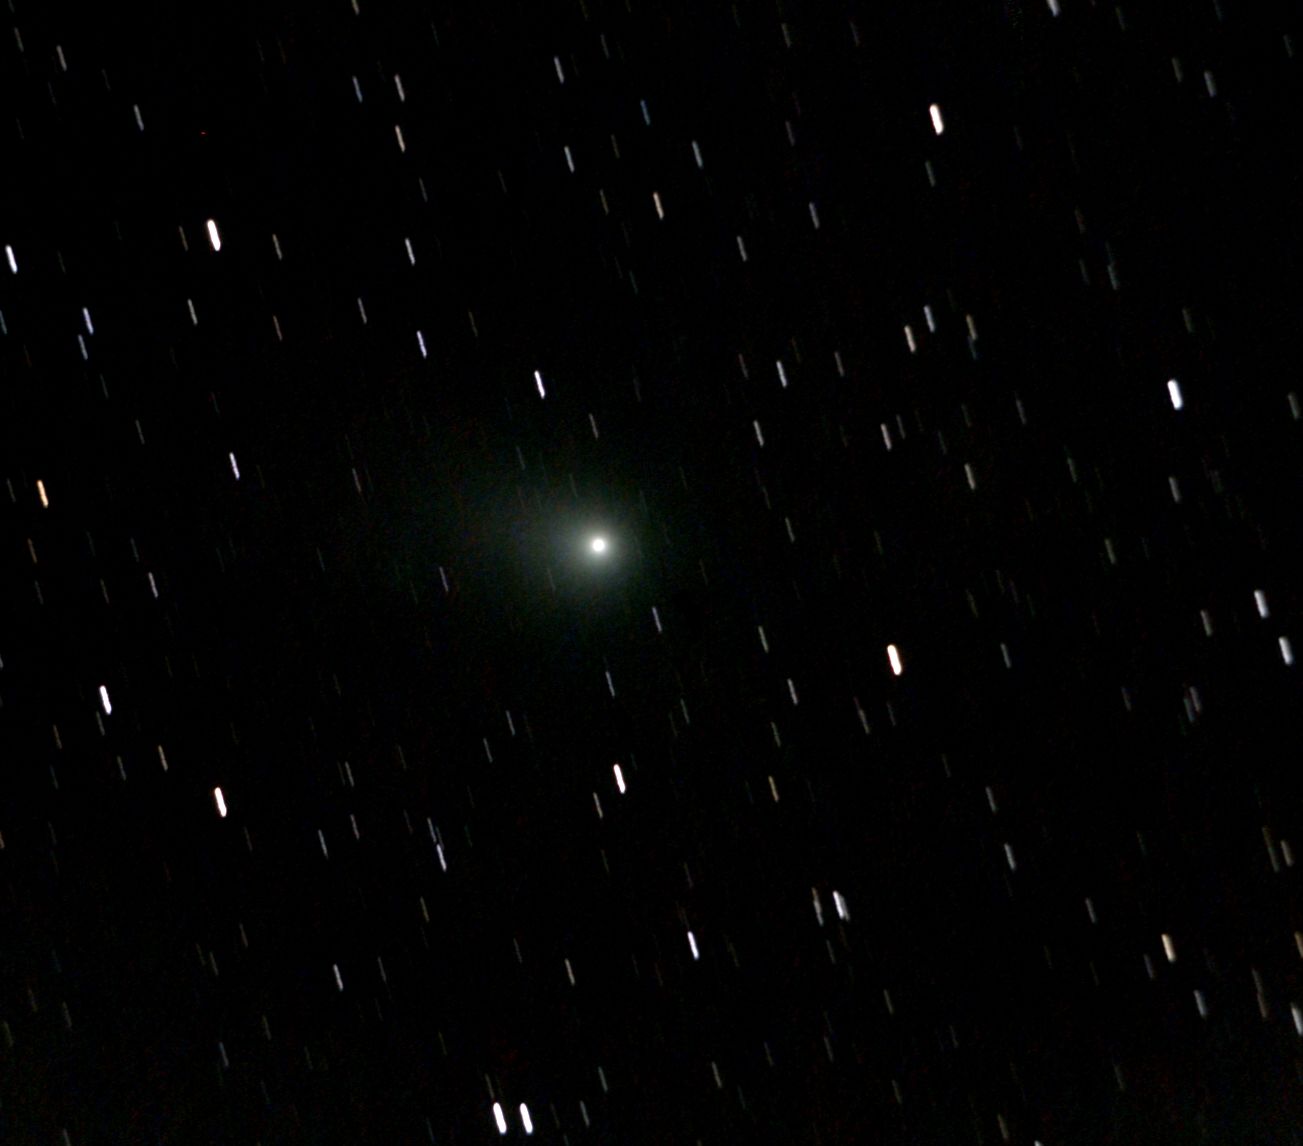 Comet C/2009 P1 Gerradd